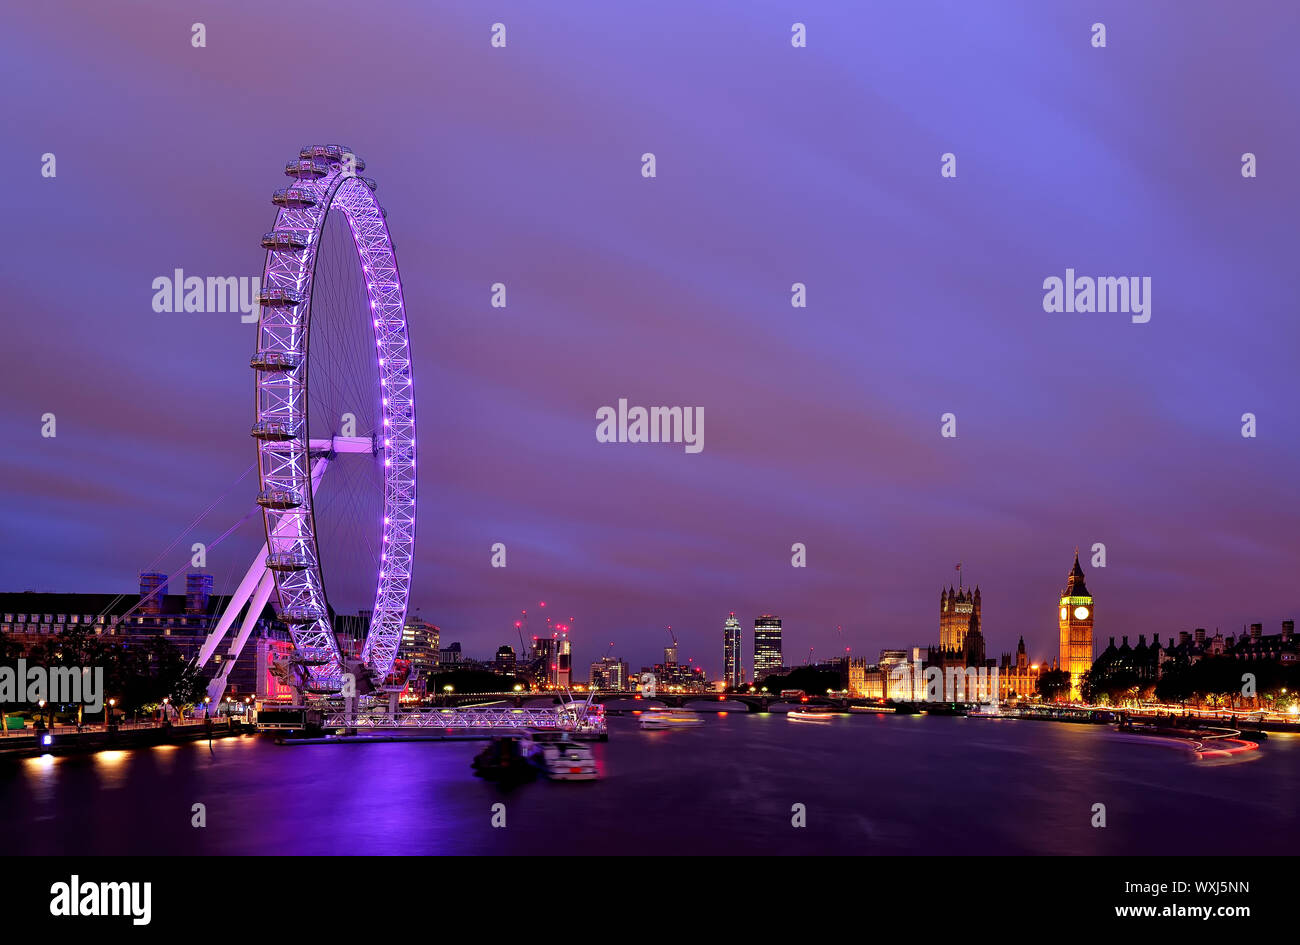 City skyline and London Eye at dusk, London, England, United Kingdom Stock Photo